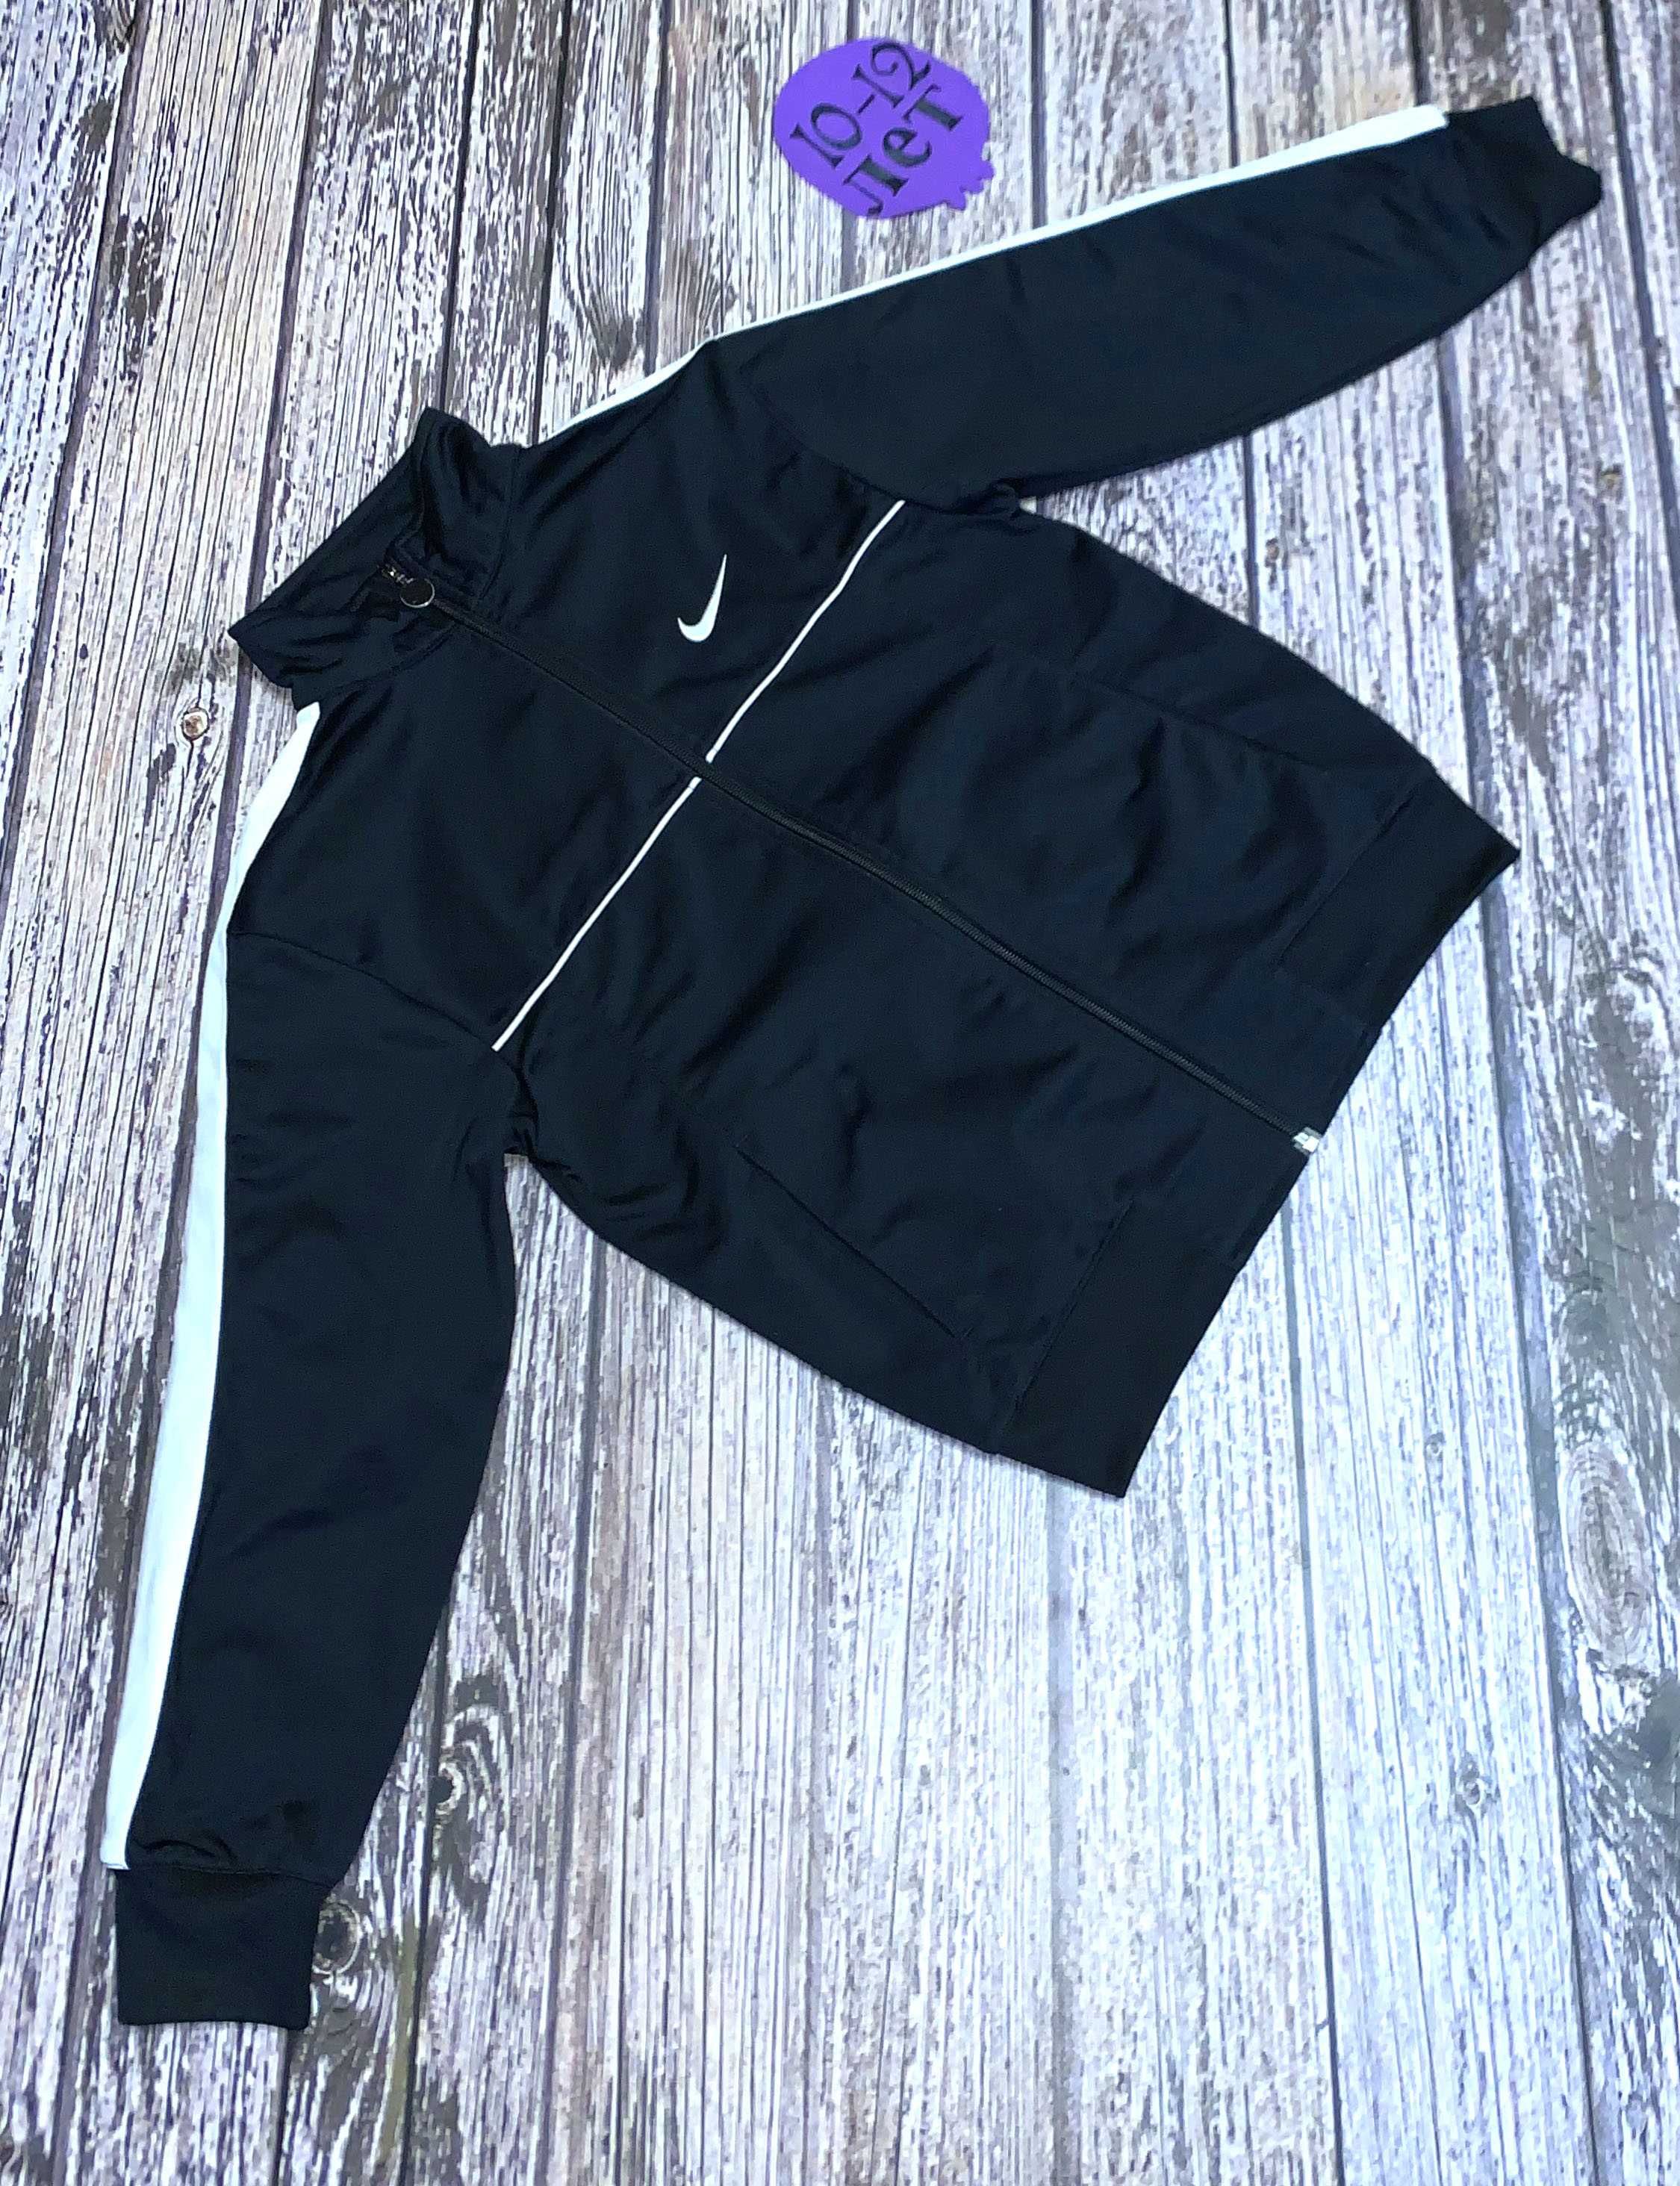 Фирменная кофта Nike для мальчика 11-12 лет, 146-152 см